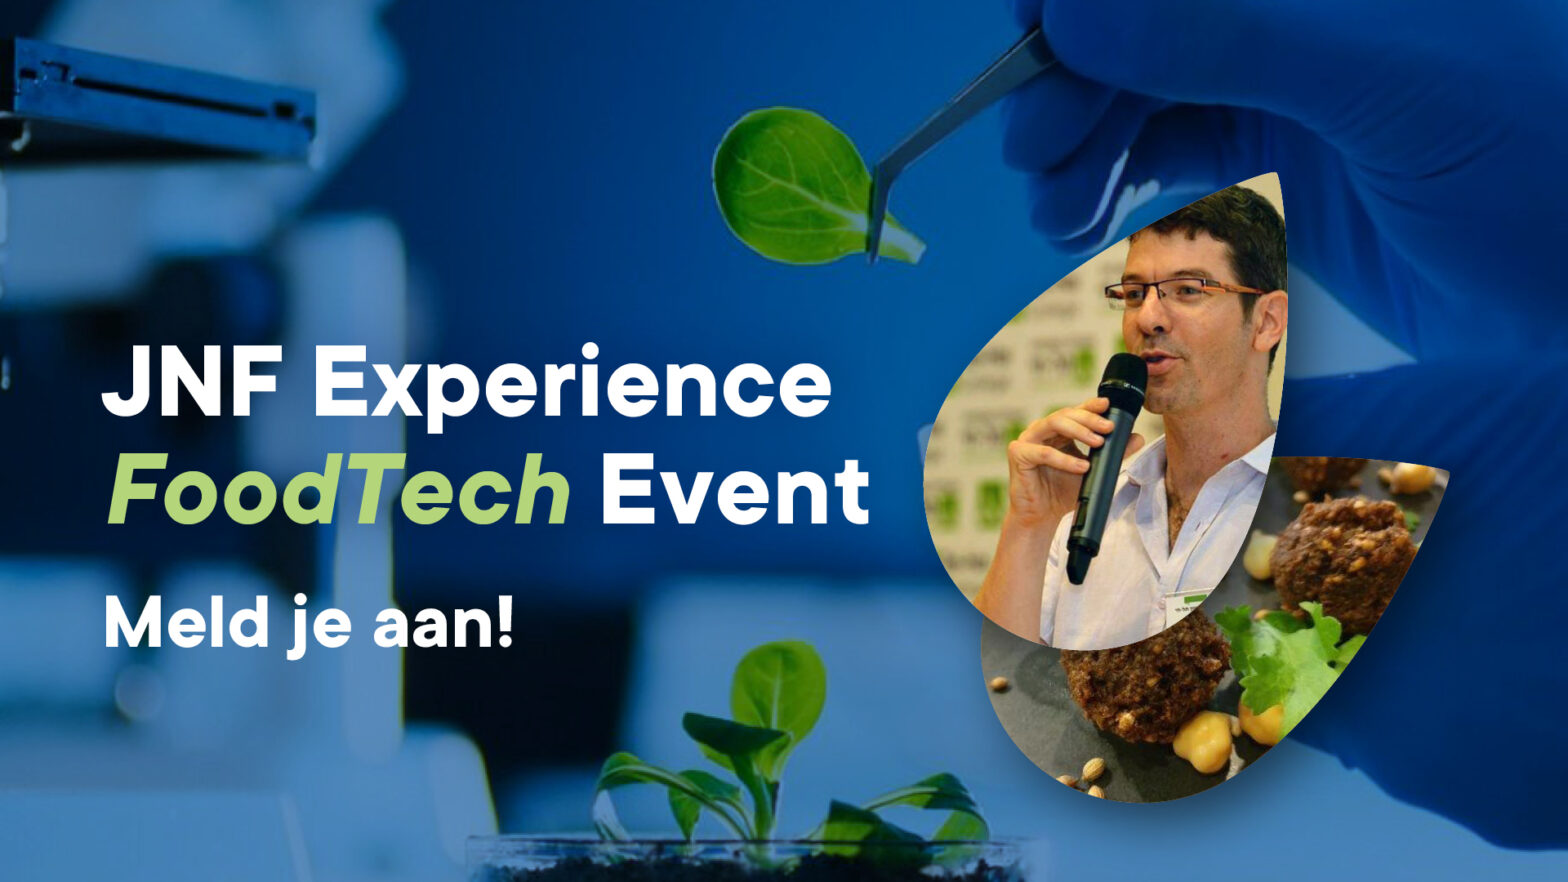 JNF Experience FoodTech Event - Meld je aan